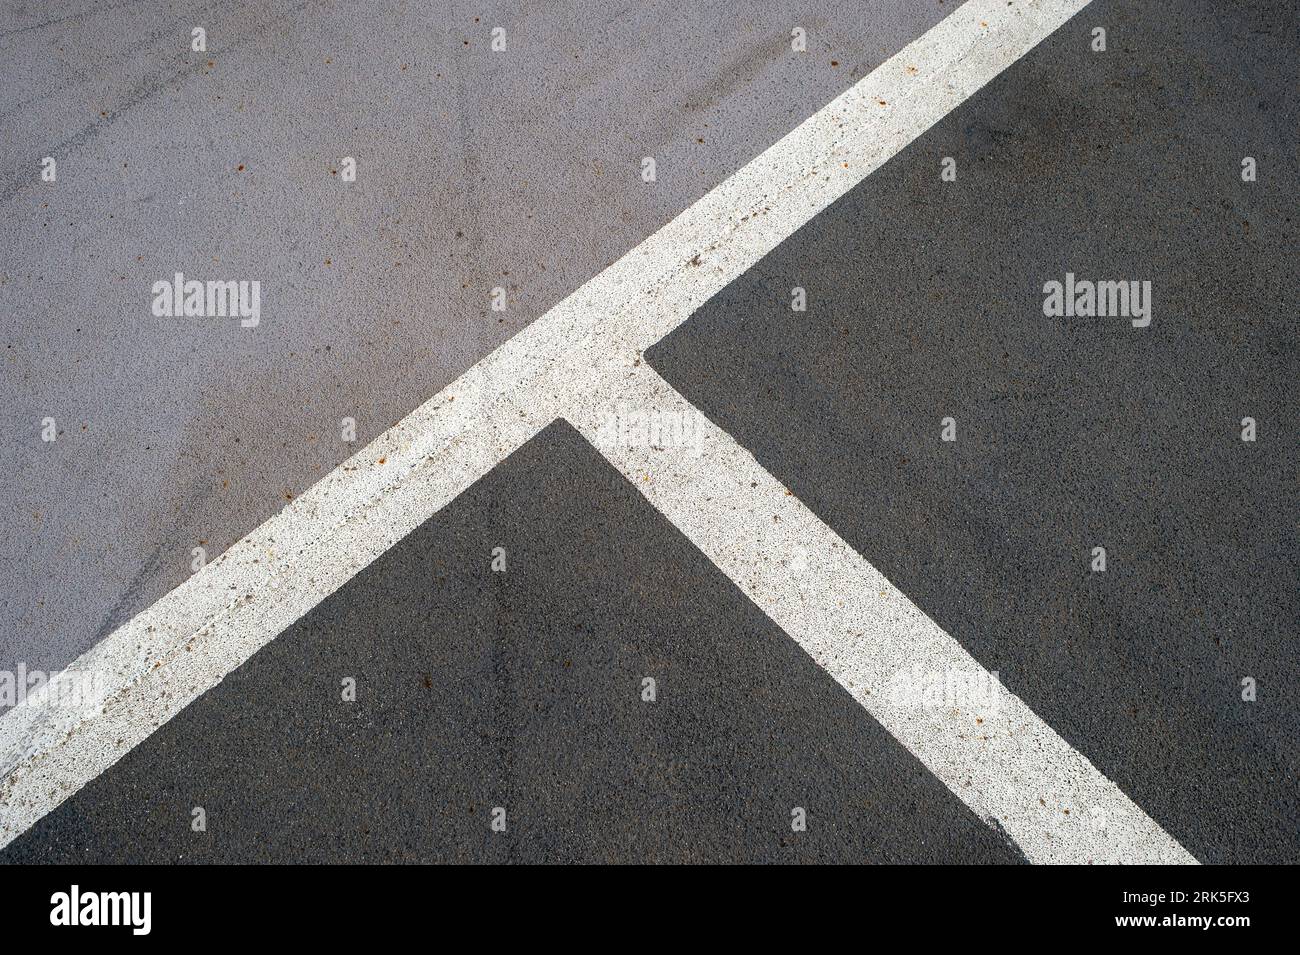 Lignes blanches peintes dans un parking sur asphalte, places de parking. Banque D'Images